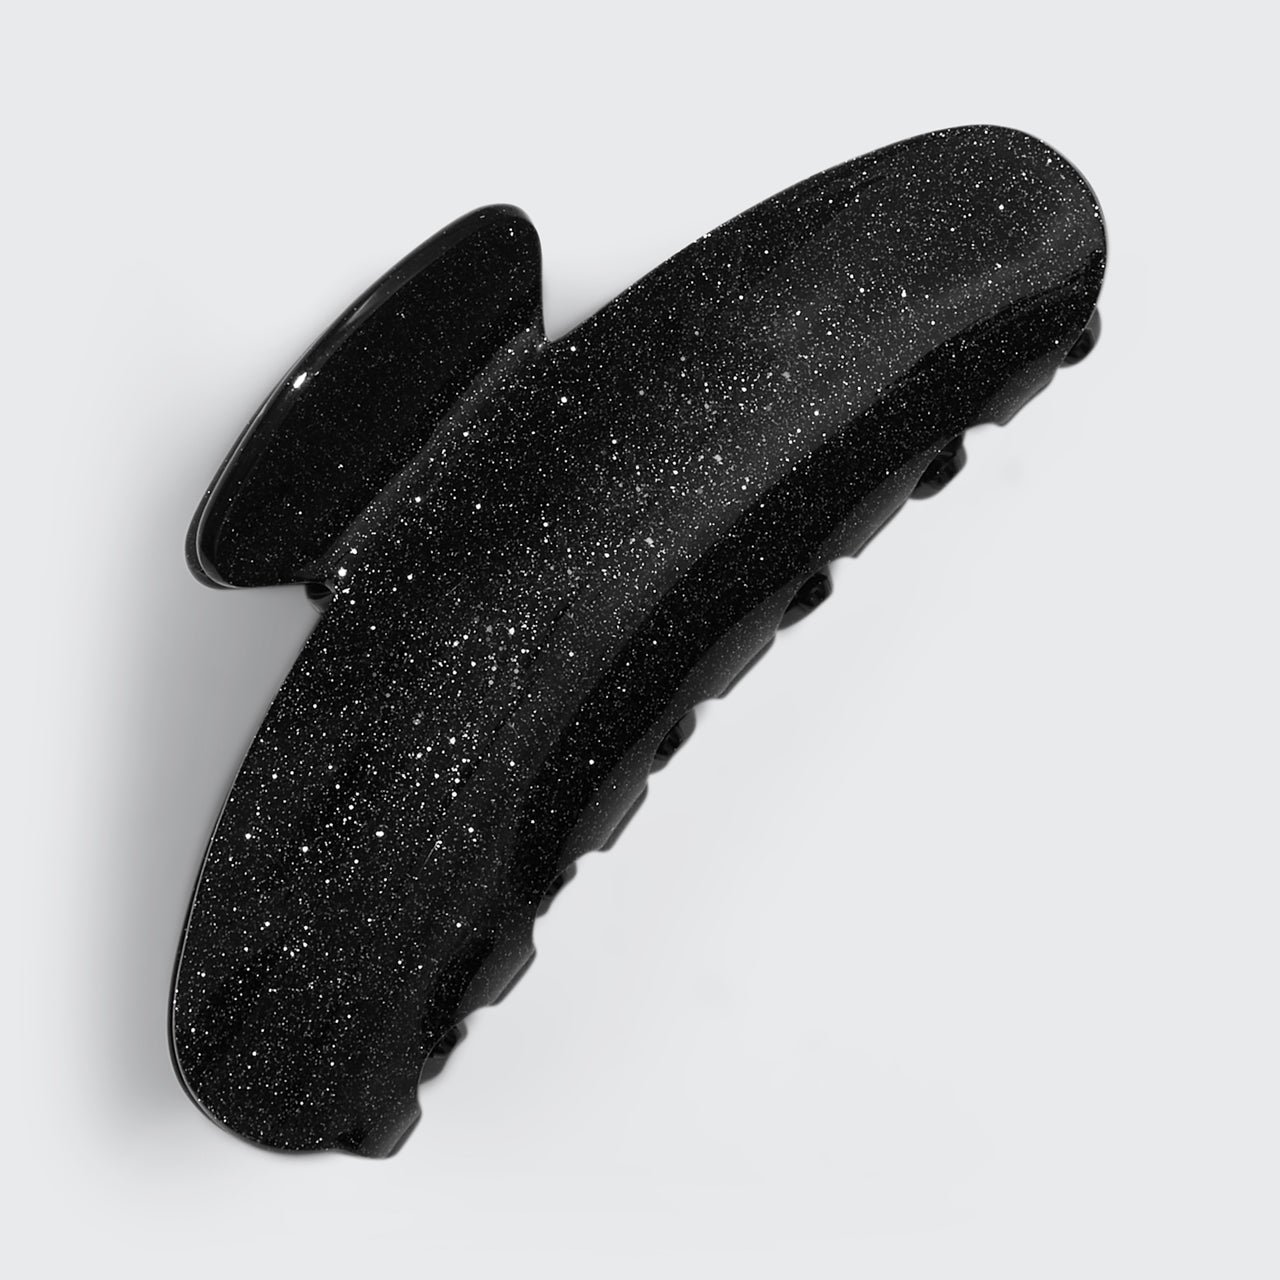 再生塑料爪夹 - 黑色闪粉